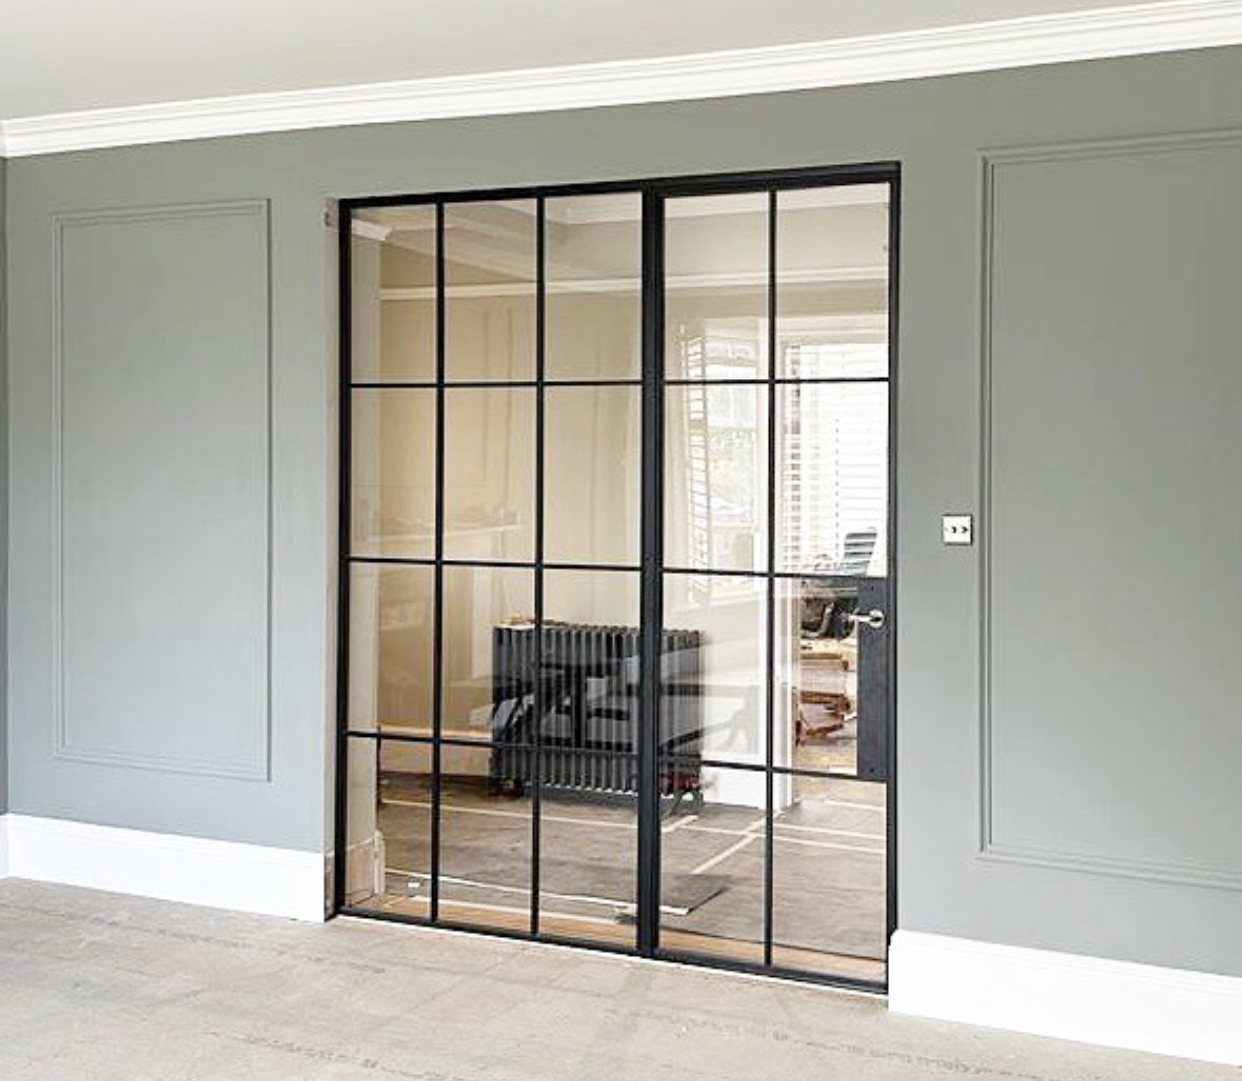 Steel and glass living room doors